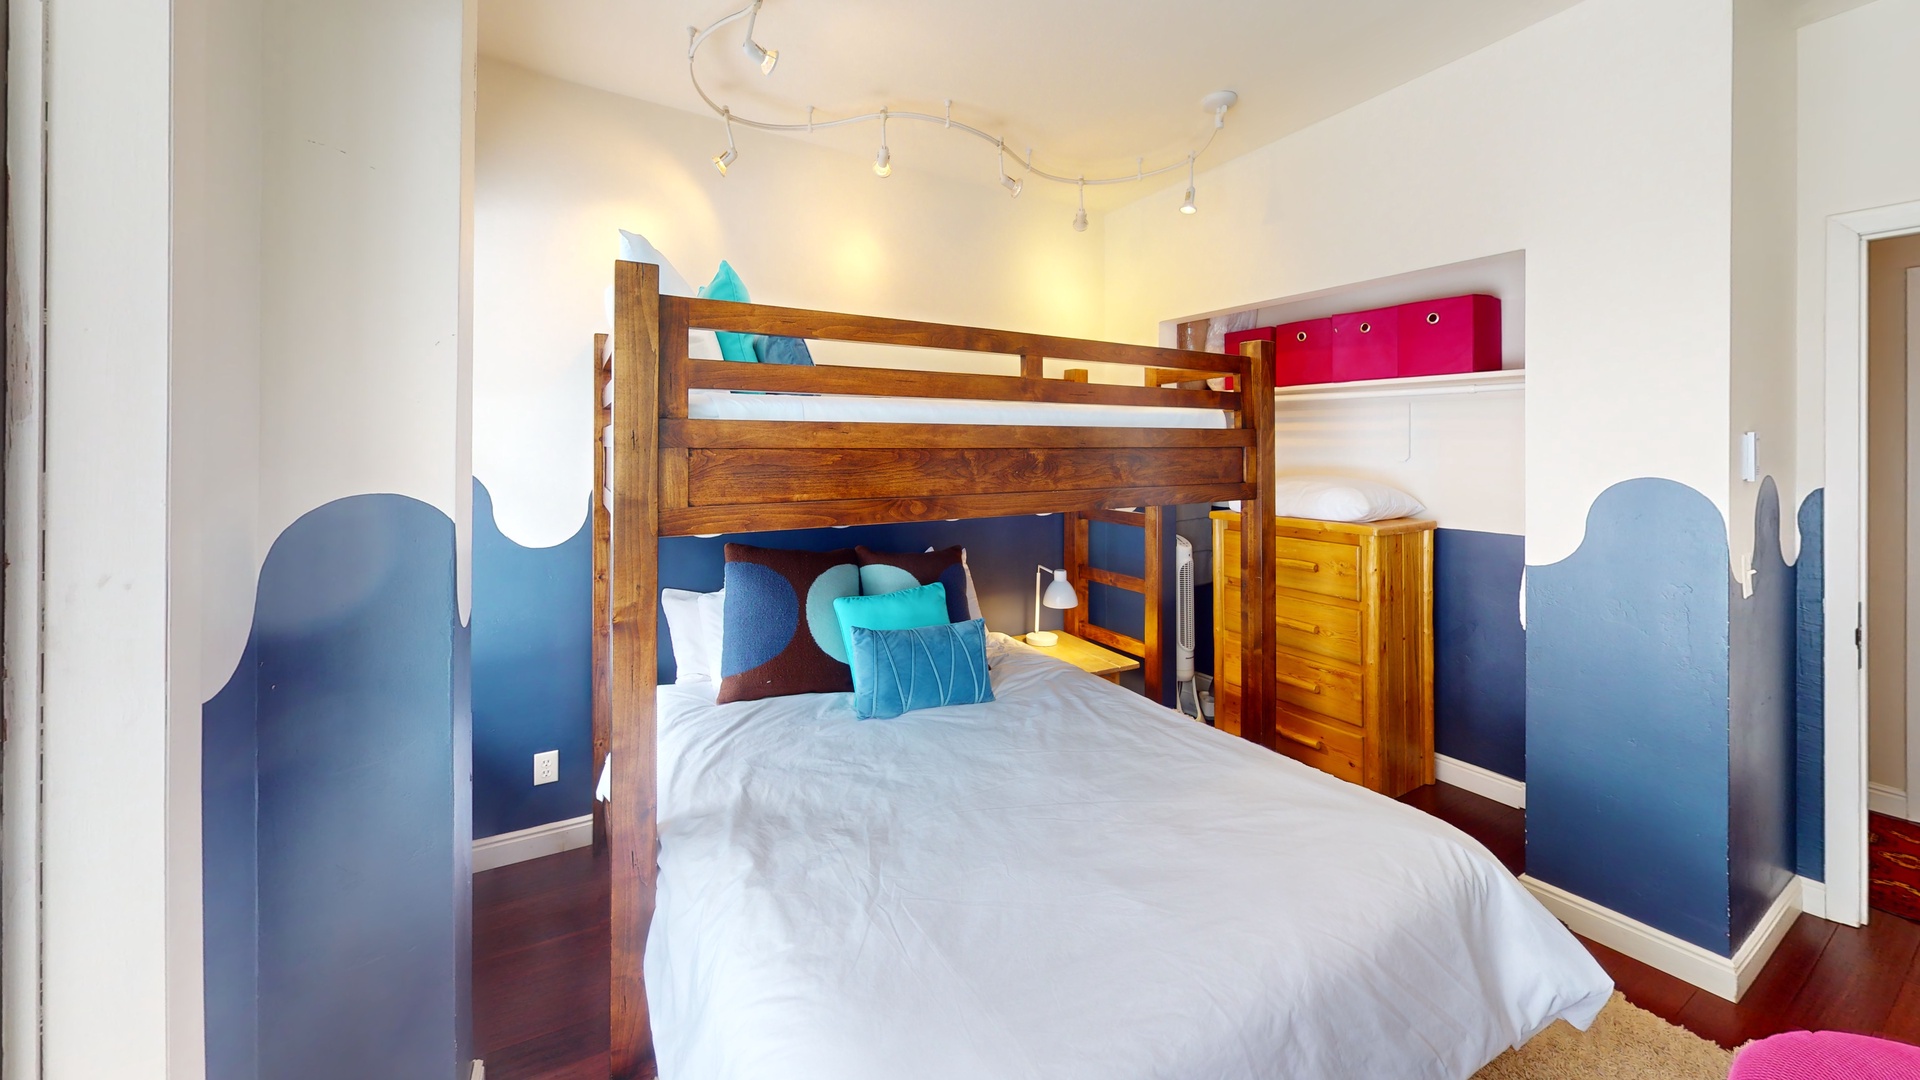 Guest Bedroom 2 - Queen lower, Twin top bunk